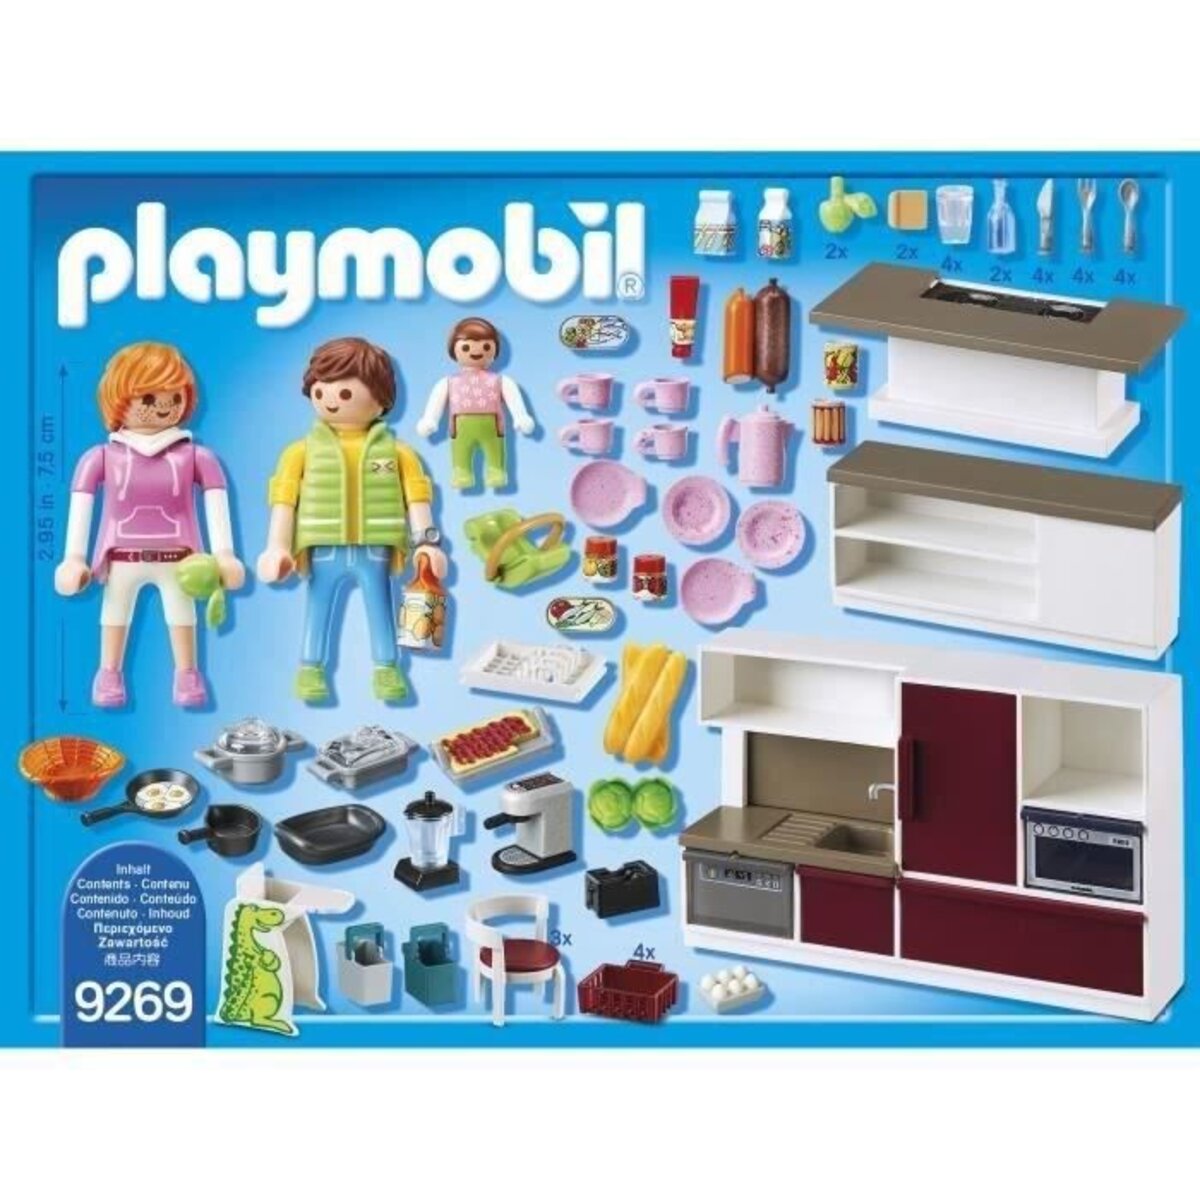 Maison playmobil équipée - Playmobil